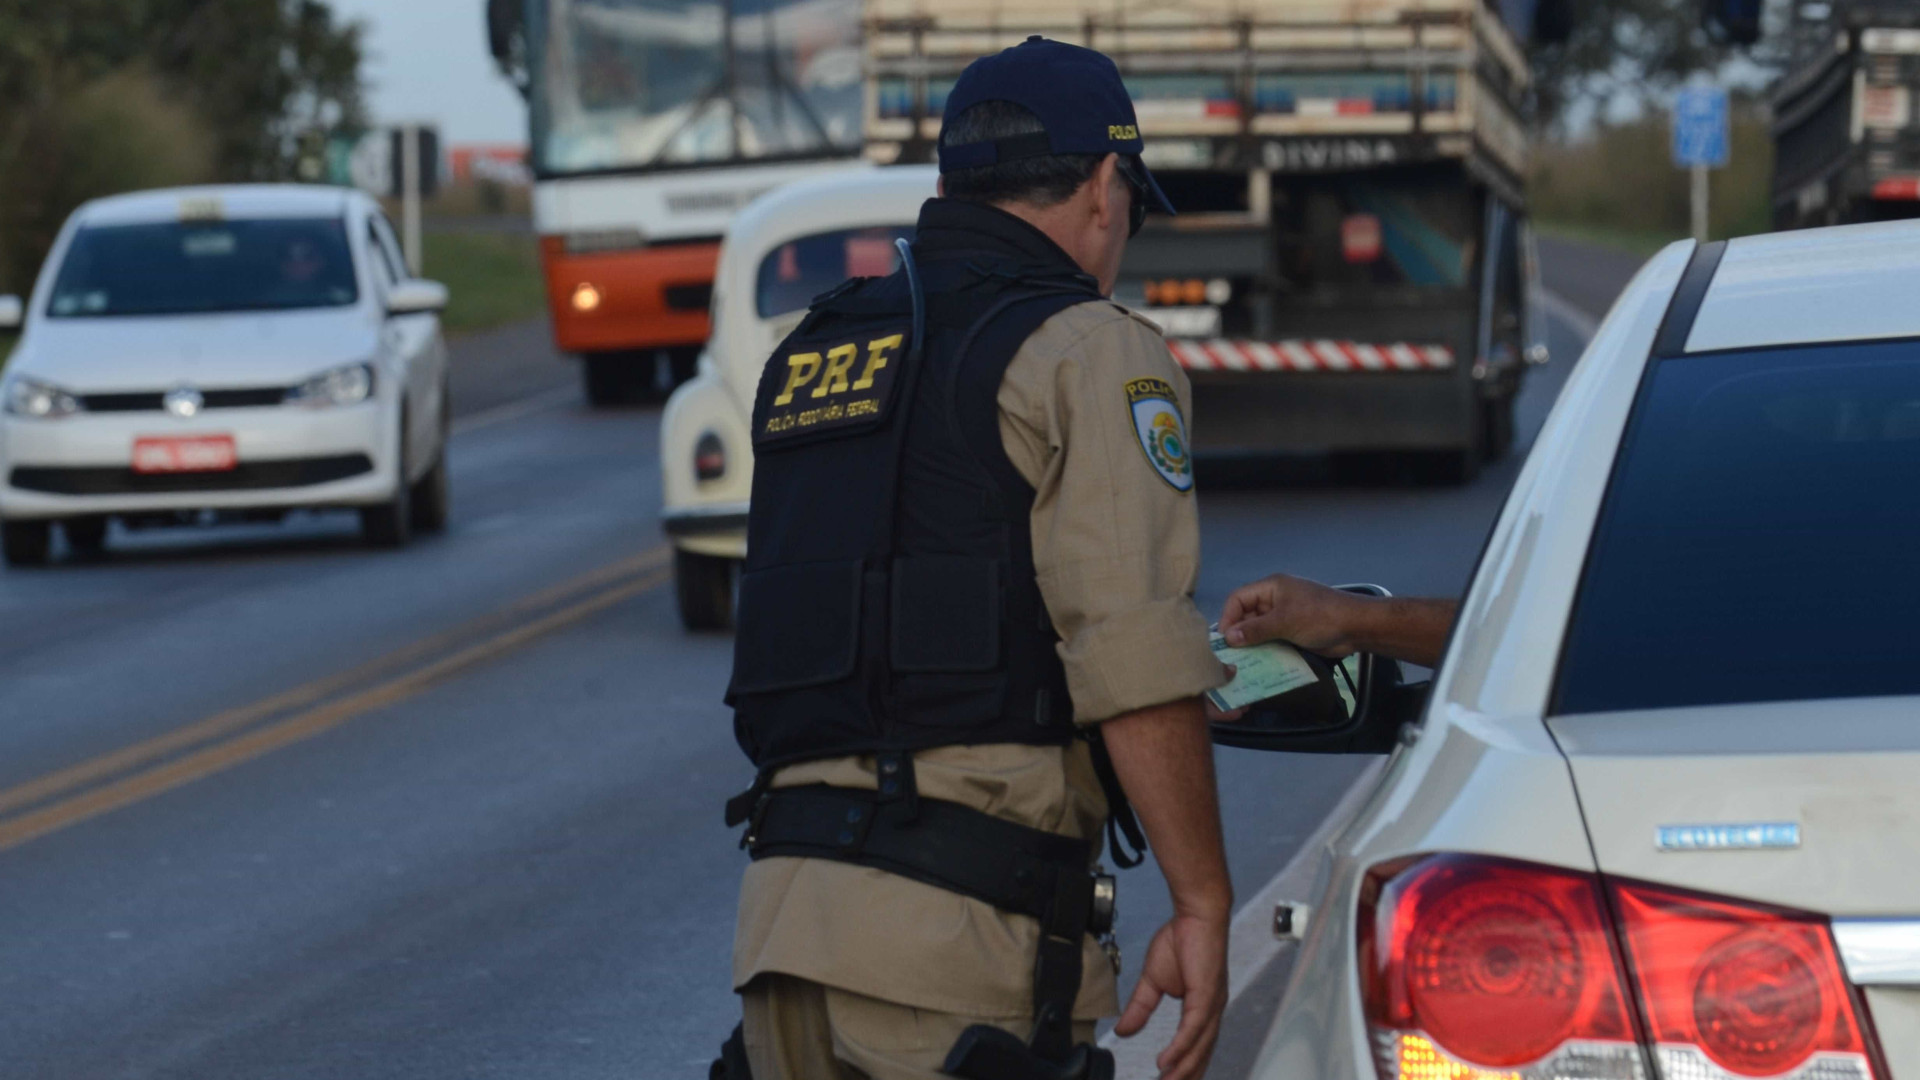 Policiais apreendem mais de 100 quilos de pasta de cocaína em rodovia